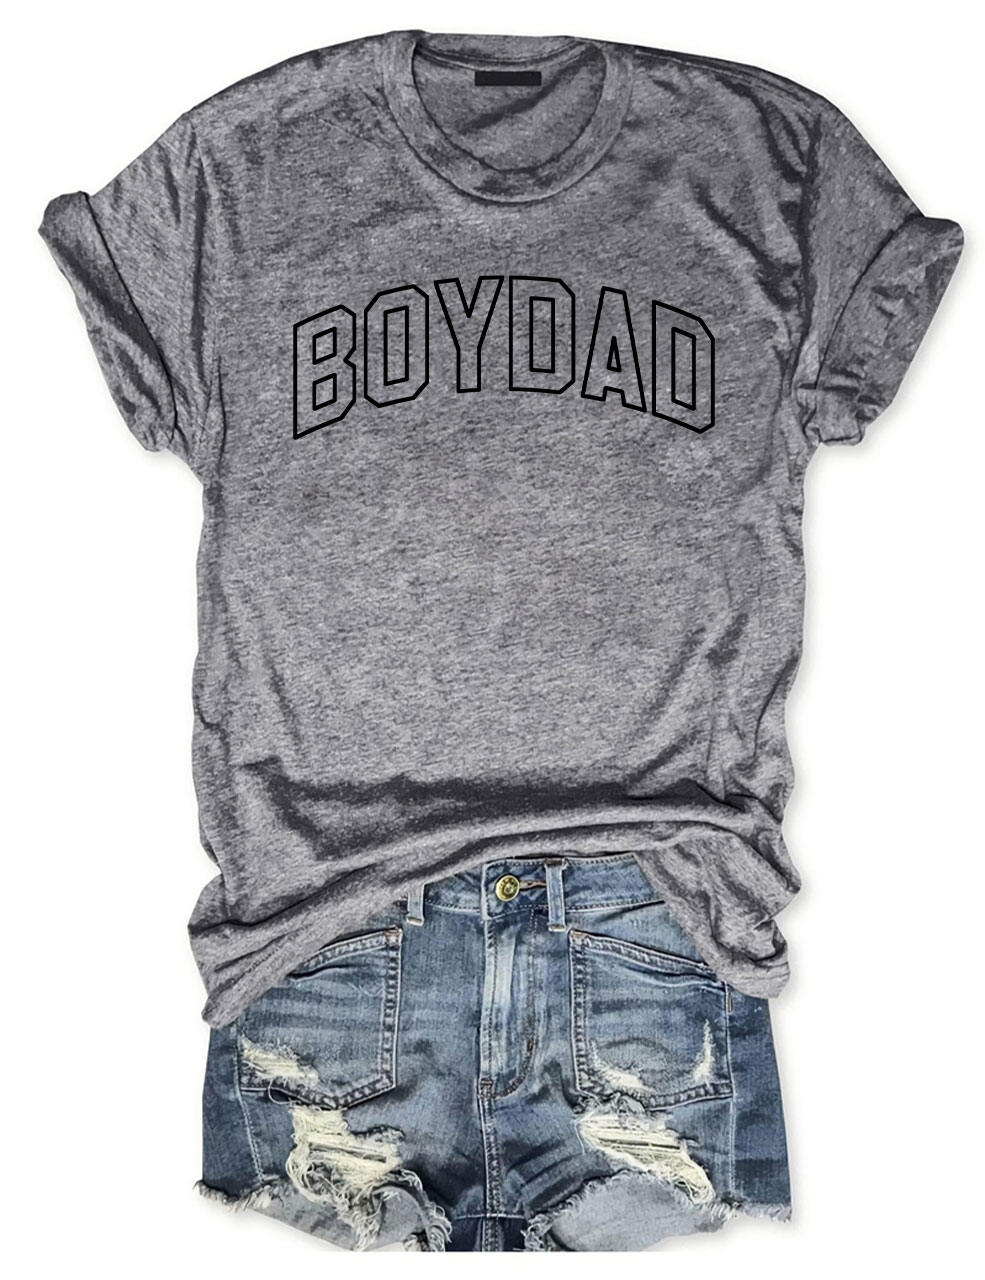 Boy Dad T-shirt